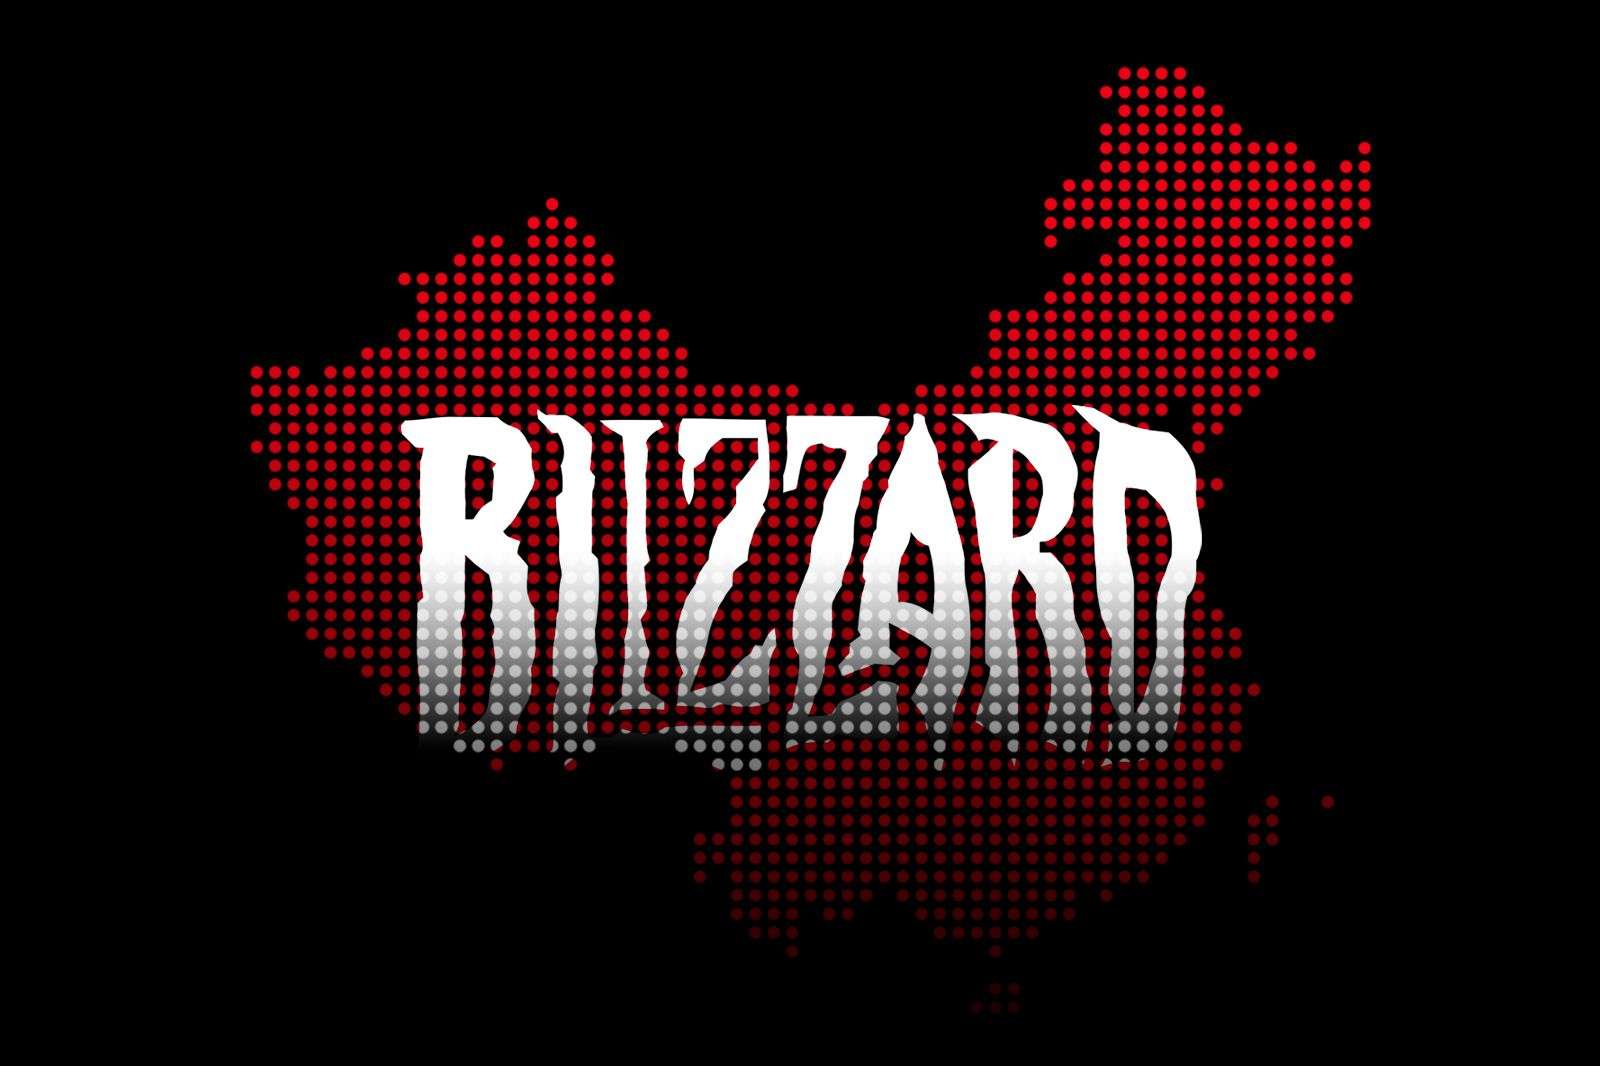 Blizzard muốn gắn bó với thị trường Trung Quốc lâu dài